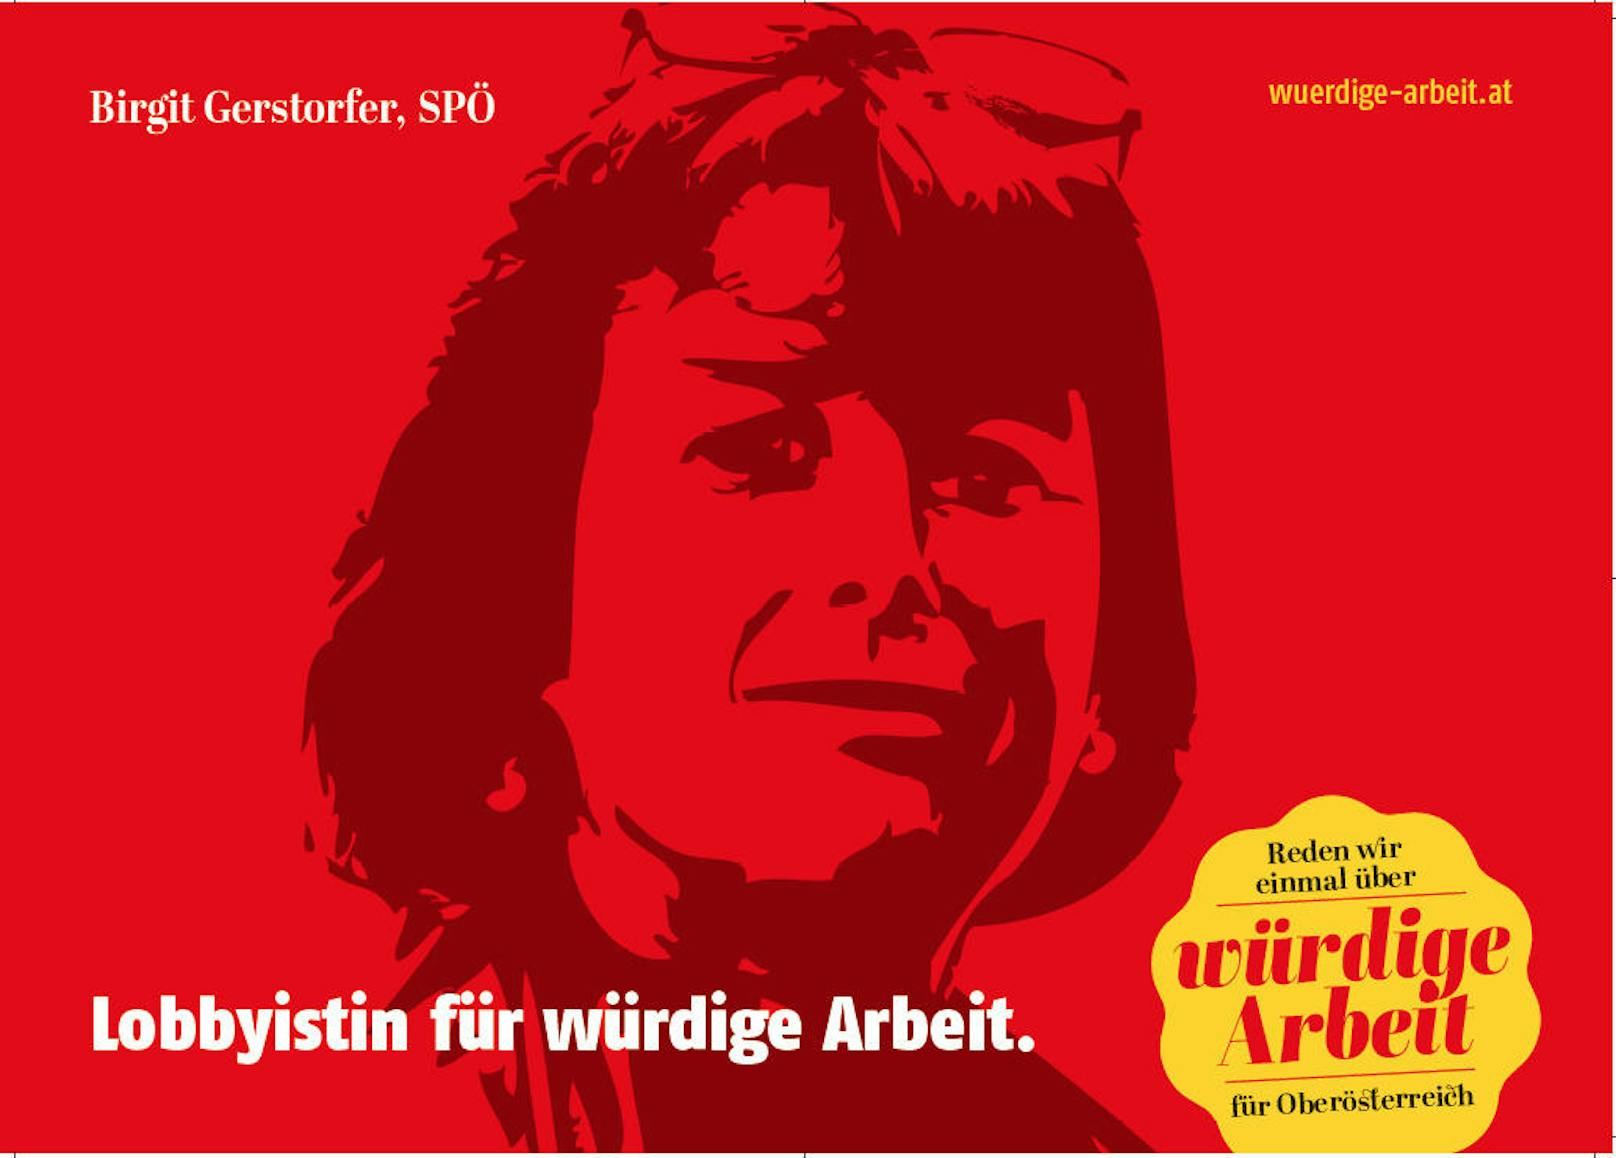 Auch Birgit Gerstorfer ist auf den Plakat-Sujets als "Lobbyistin für würdige Arbeit" abgebildet.